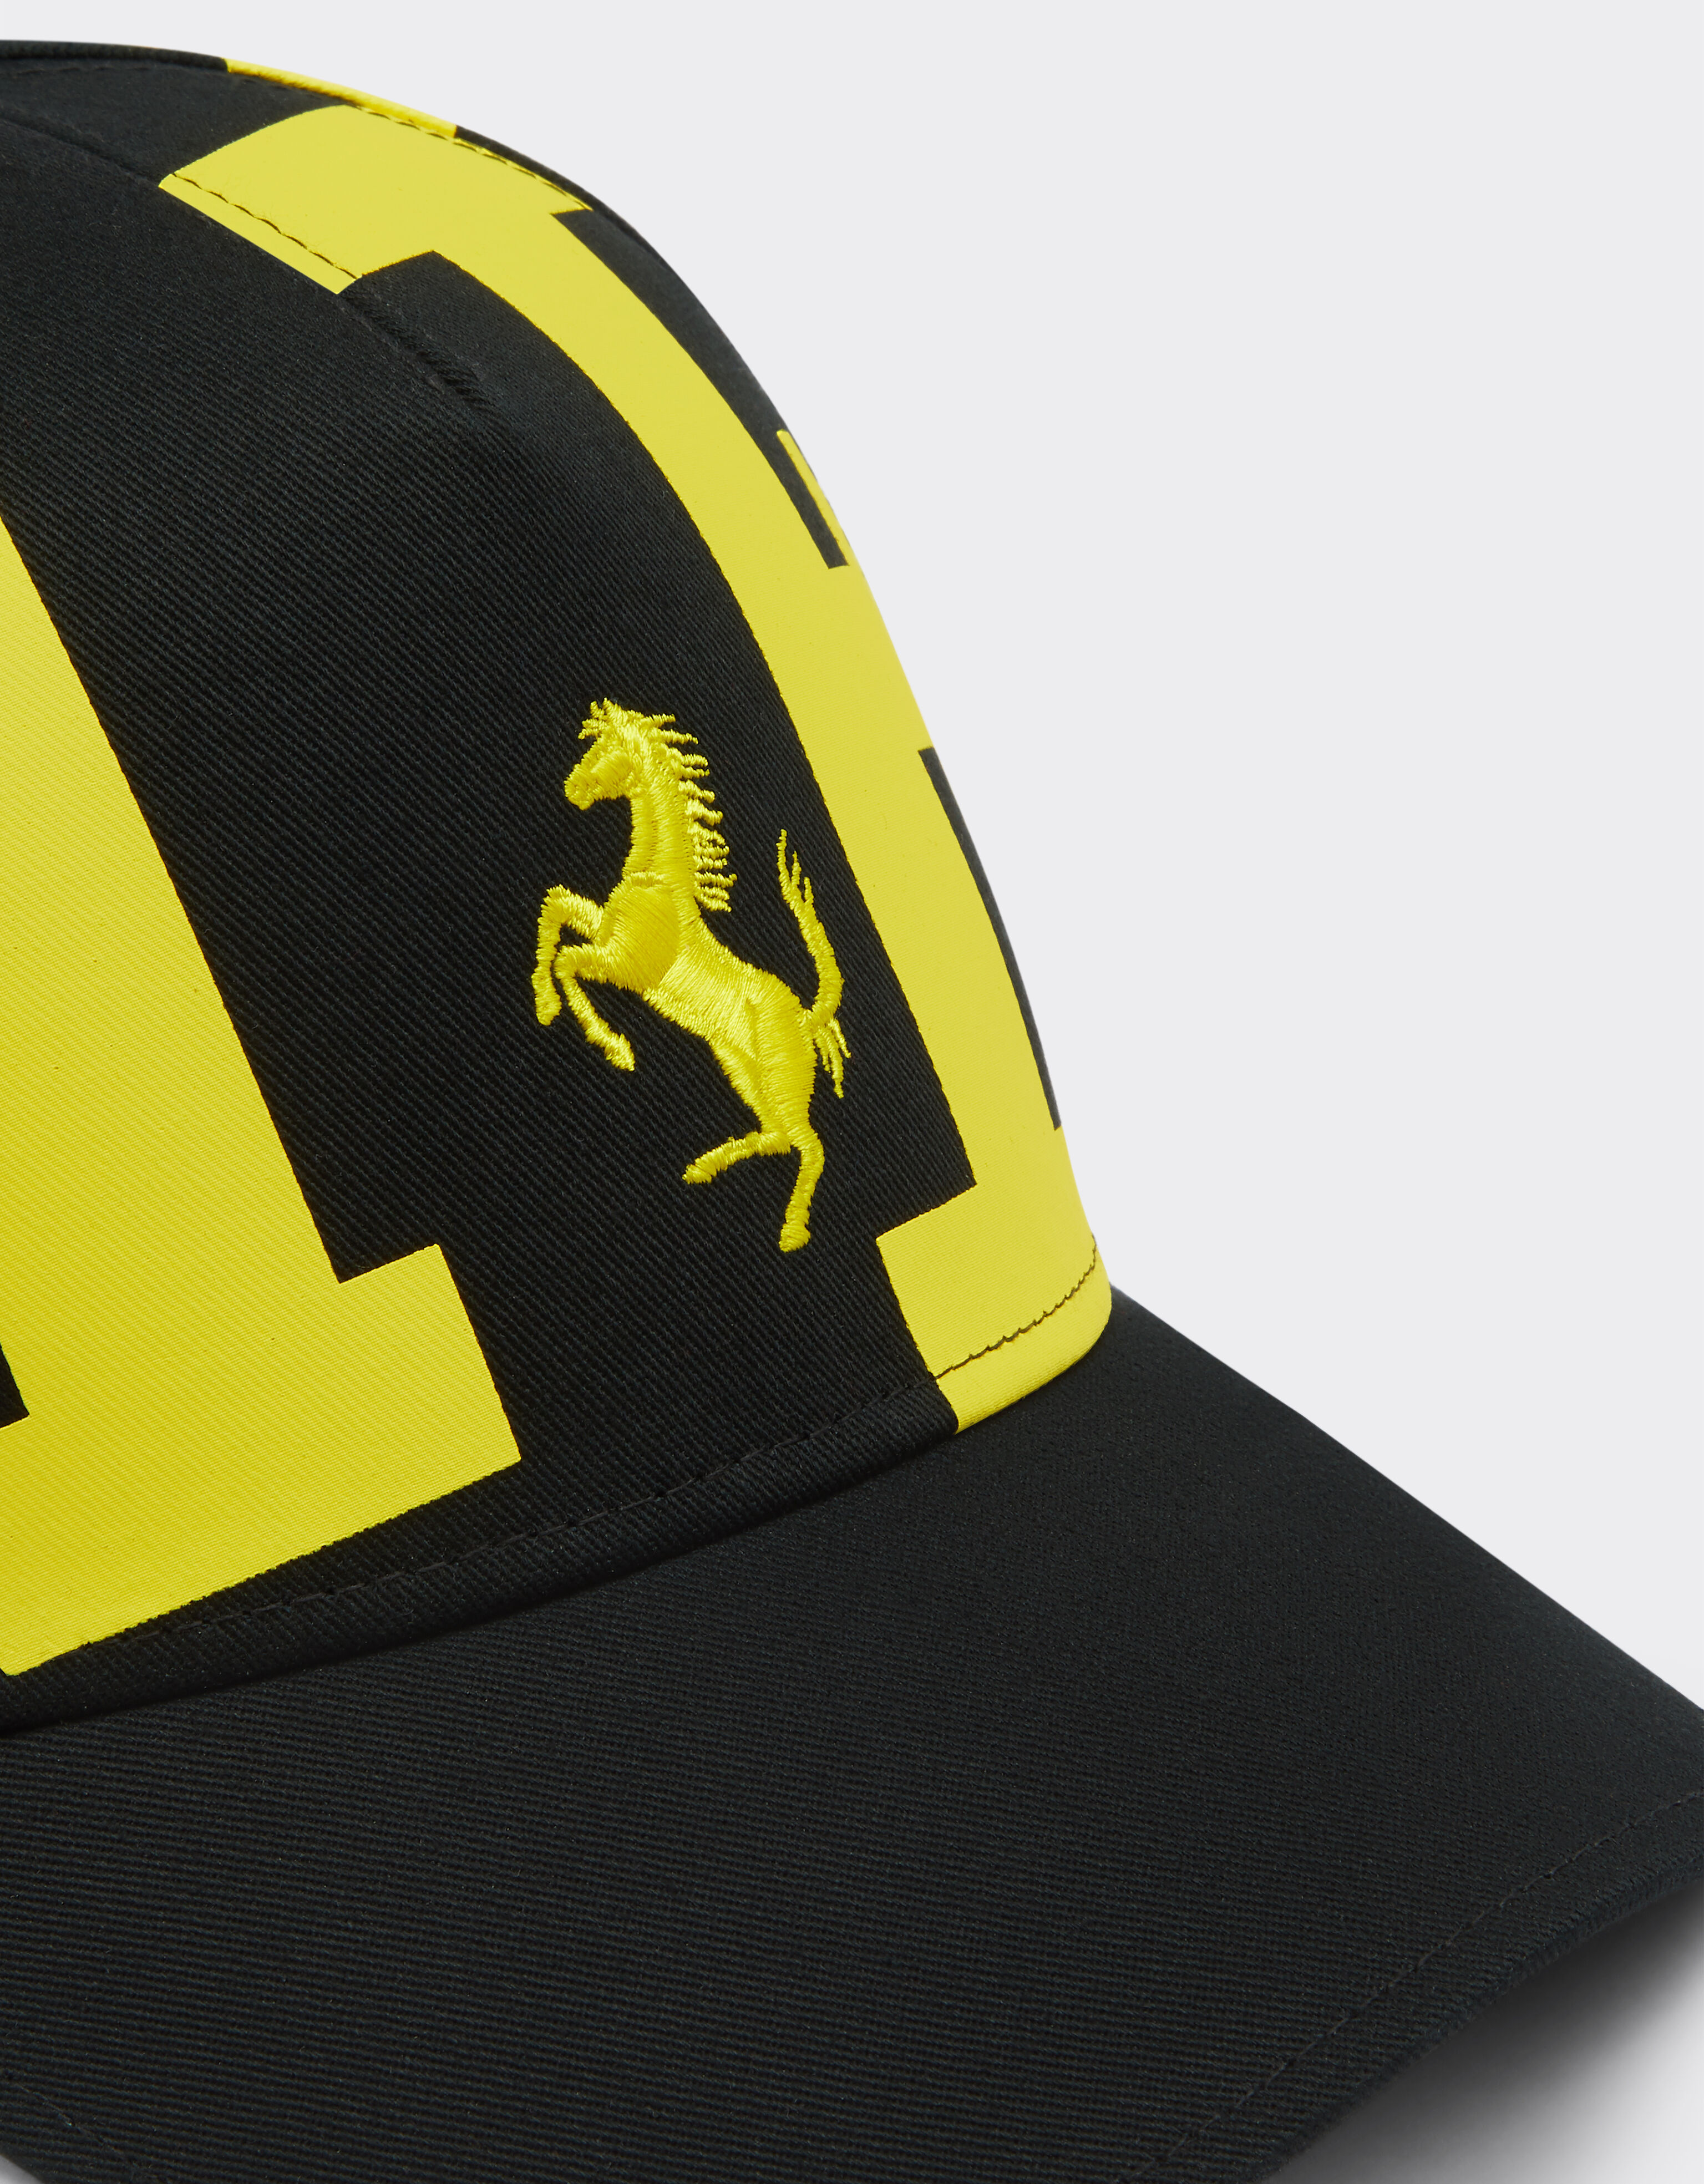 Ferrari Children’s cap with Ferrari logo 黑色 47096fK